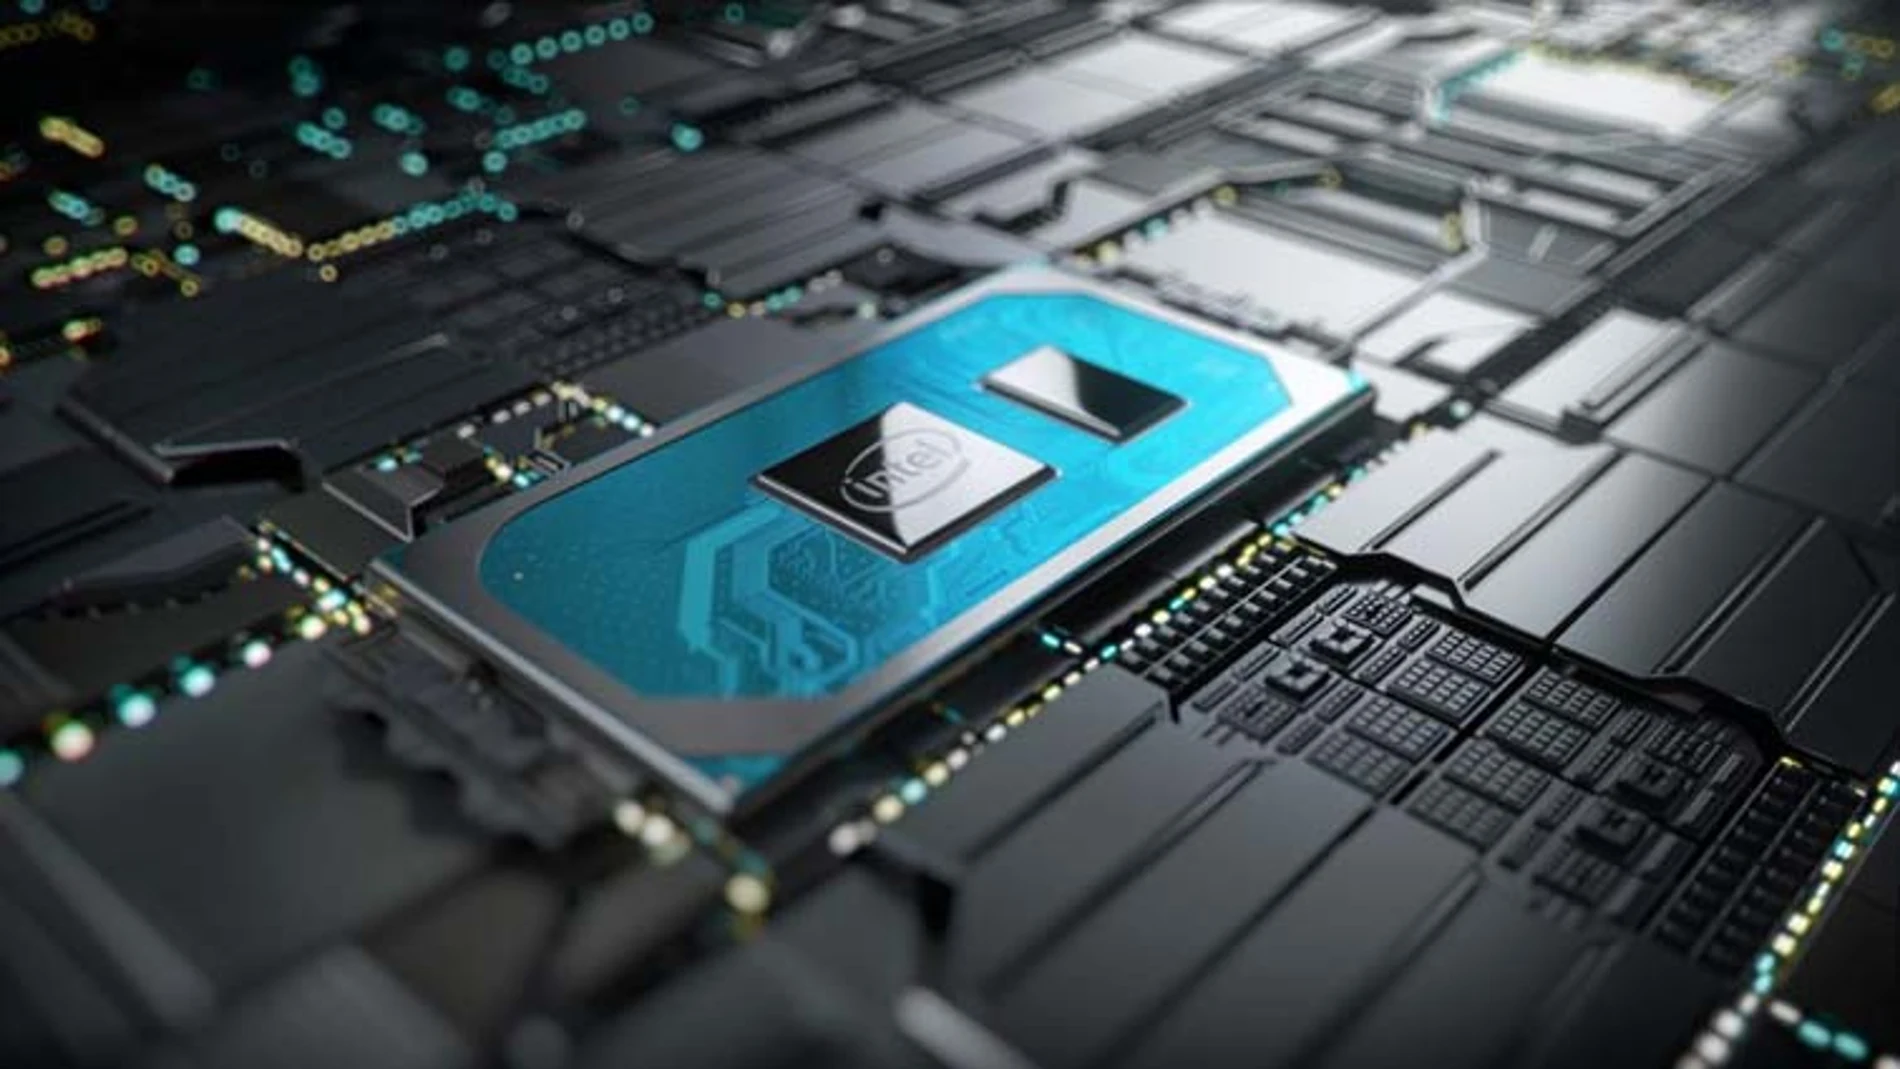 La décima generación de Intel Core llegará en breve al mercado con numerosas mejoras en rendimiento y conectividad.